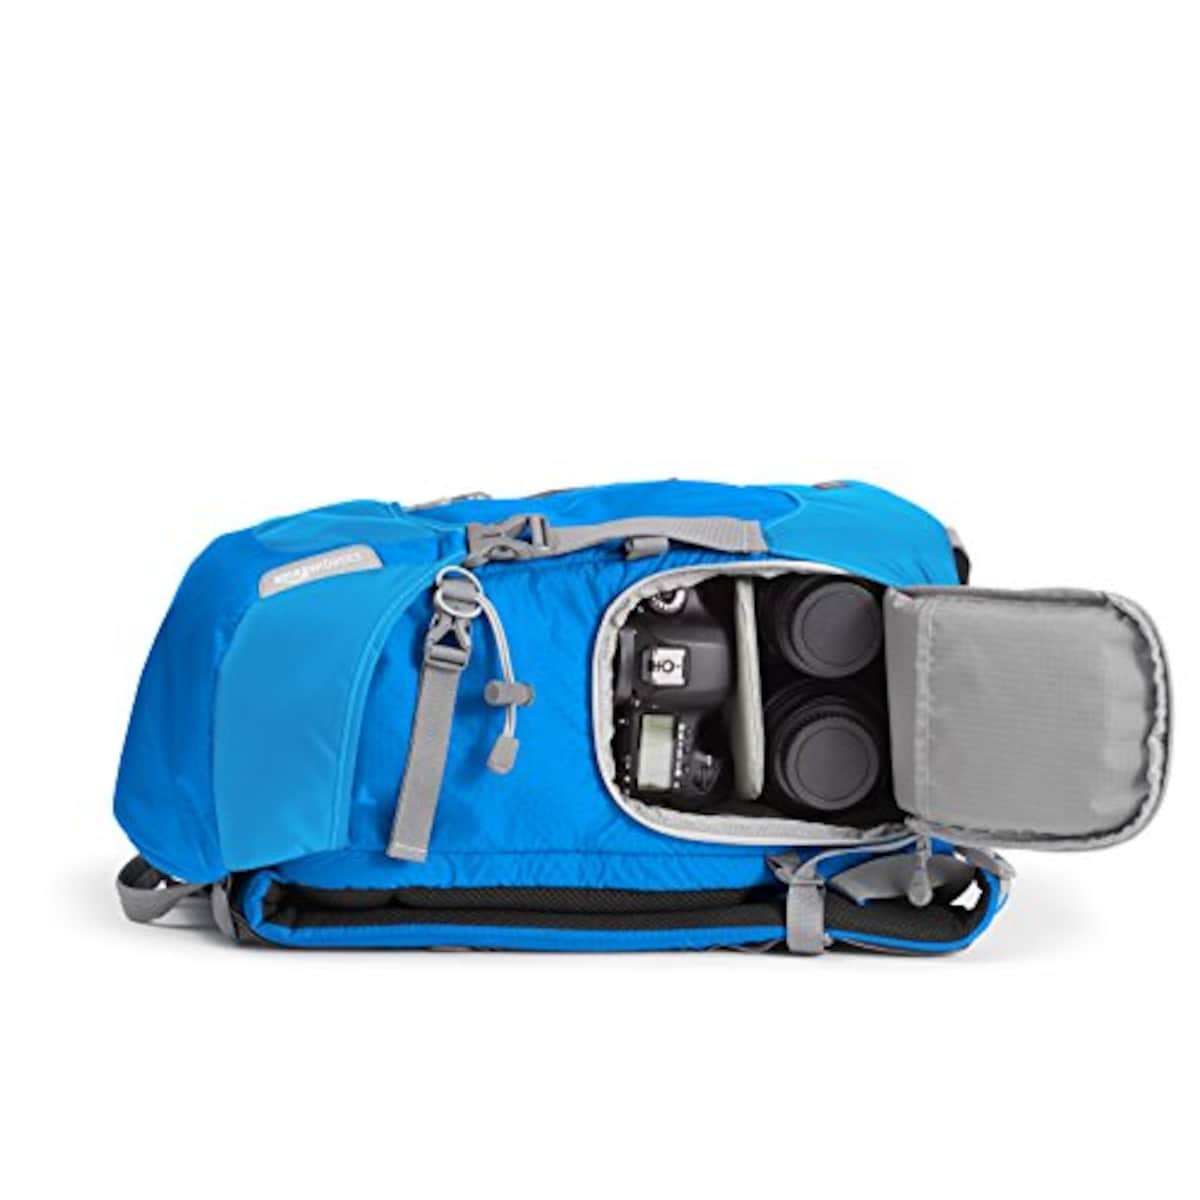  Amazonベーシック カメラリュック 14L ハイカーシリーズ レインカバー付き ブルー画像3 